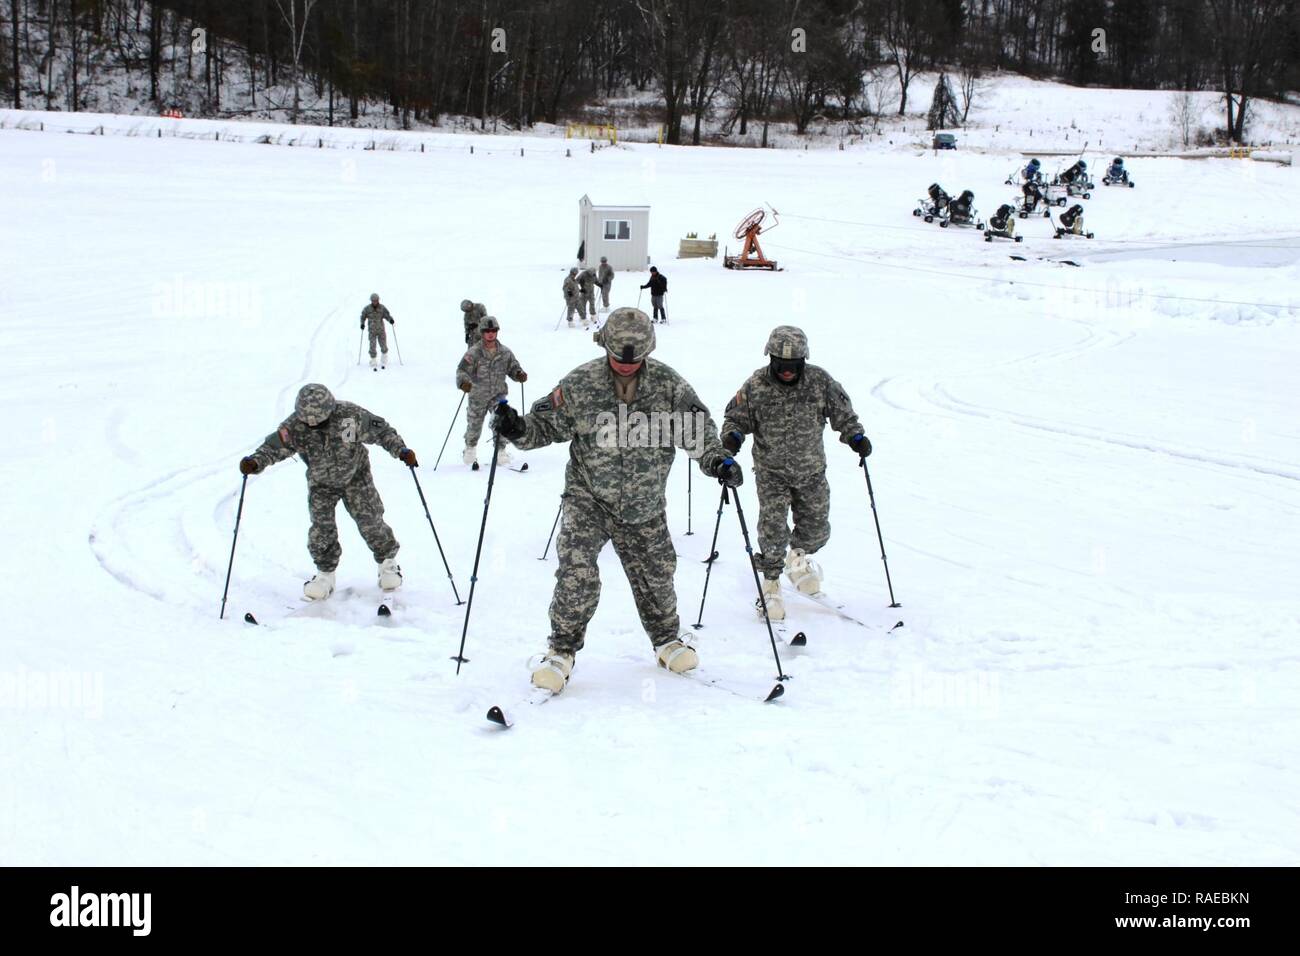 Los soldados con la 181ª Brigada de entrenamiento multifunción participar en una sesión de entrenamiento de esquí 27 de enero, 2017, en la zona de esquí de Whitetail Ridge como parte del curso de operaciones en frío en Fort McCoy. El curso de operaciones en frío es el primero de su tipo coordinado por la Dirección de planes, movilización, capacitación y seguridad, o DPTMS. Se incluyó la participación de 11 soldados con la 181ª y es impartido por dos instructores contratados en apoyo DPTMS. Foto de stock